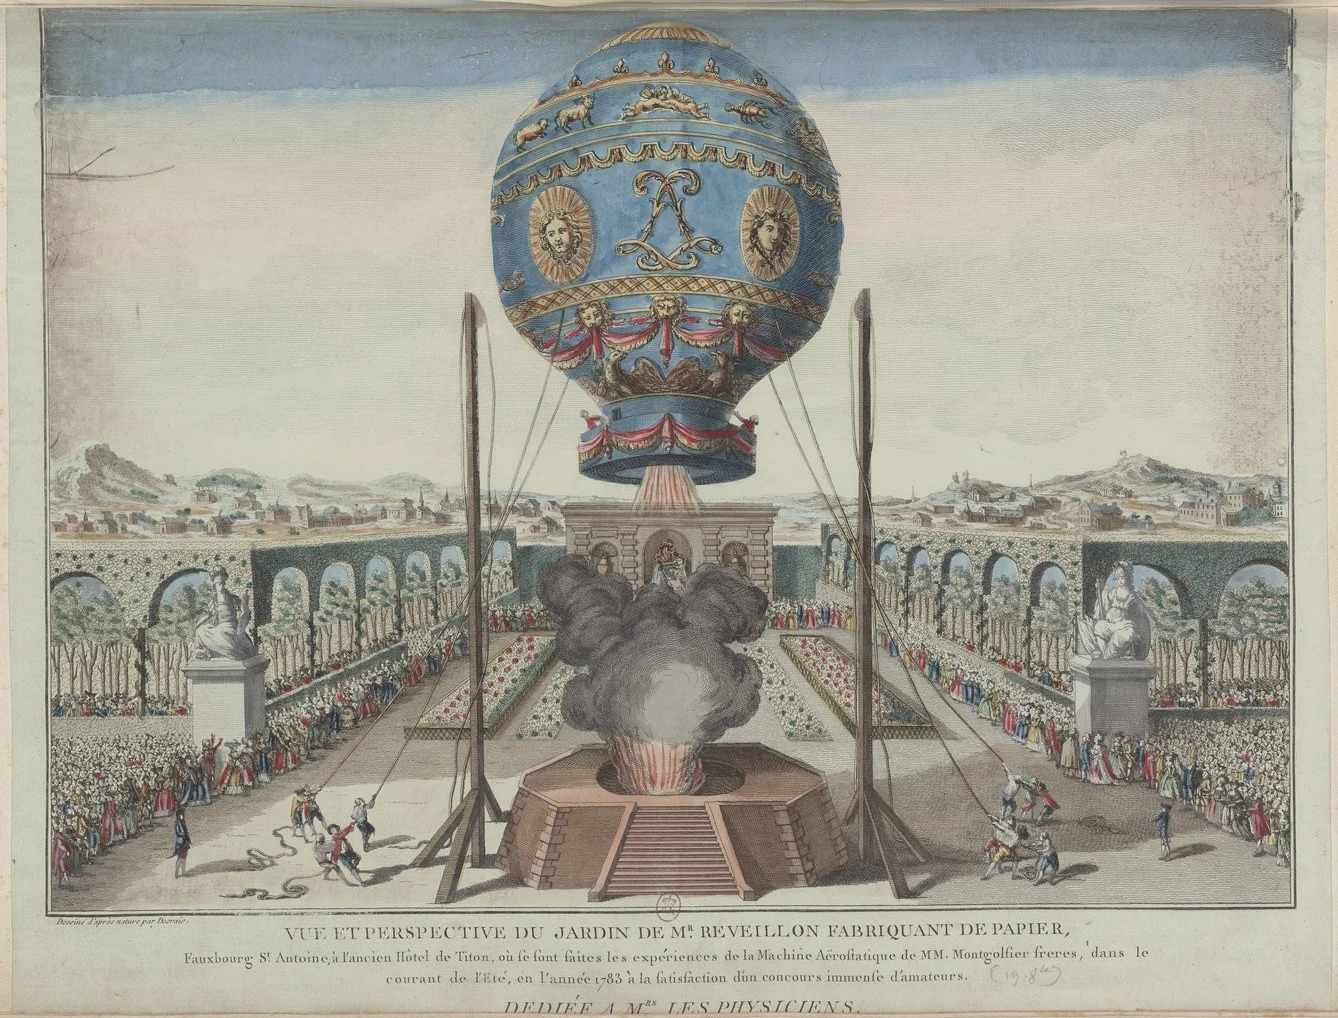 Le premier vol d'être humain s'est fait dans ce genre de montgolfière en 1783. Photo choisie par monsieurdefrance.com : Claude-Louis Desrais, Public domain, via Wikimedia Commons